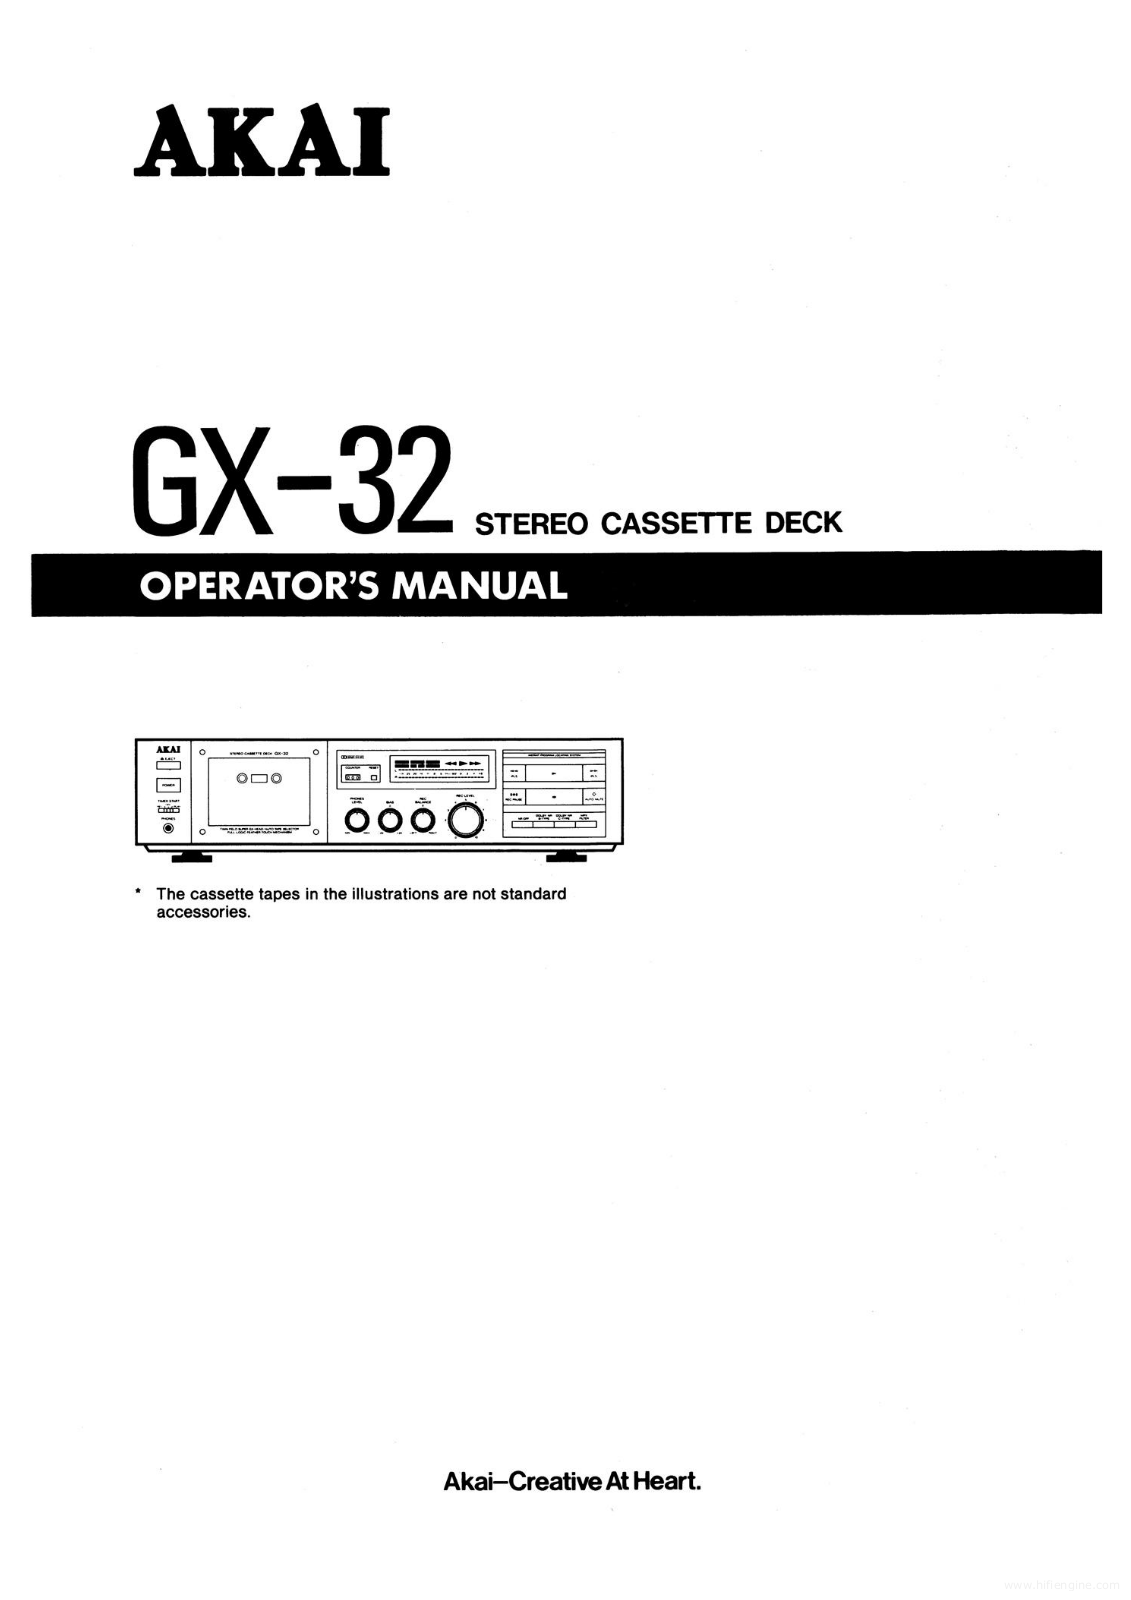 Akai gx-32 User Manual